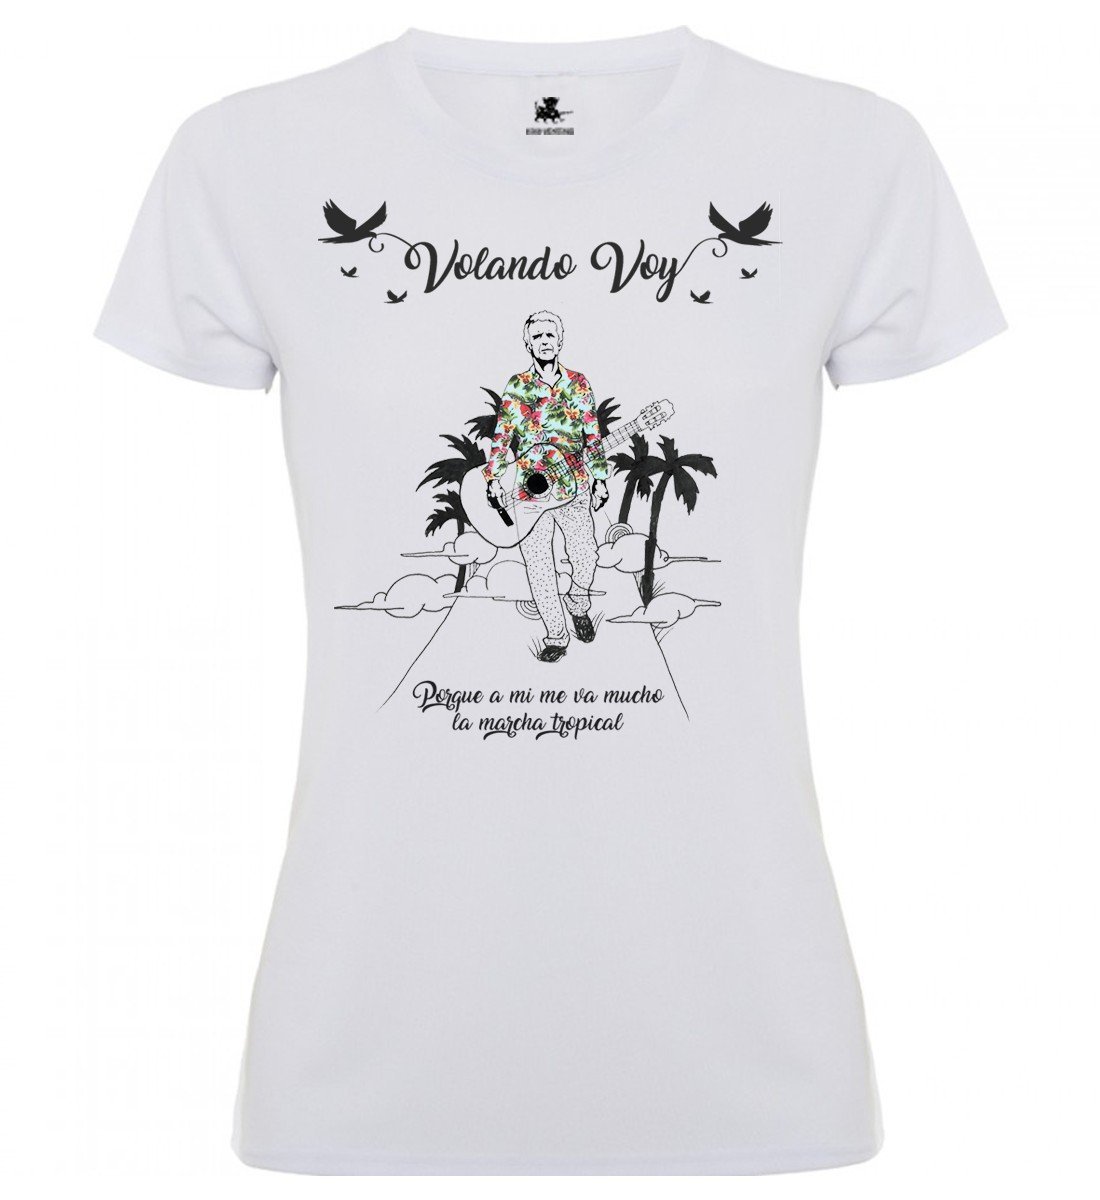 Kiko Veneno - Camiseta Mujer "Volando voy" - D2fy · Rocktud - Kiko Veneno